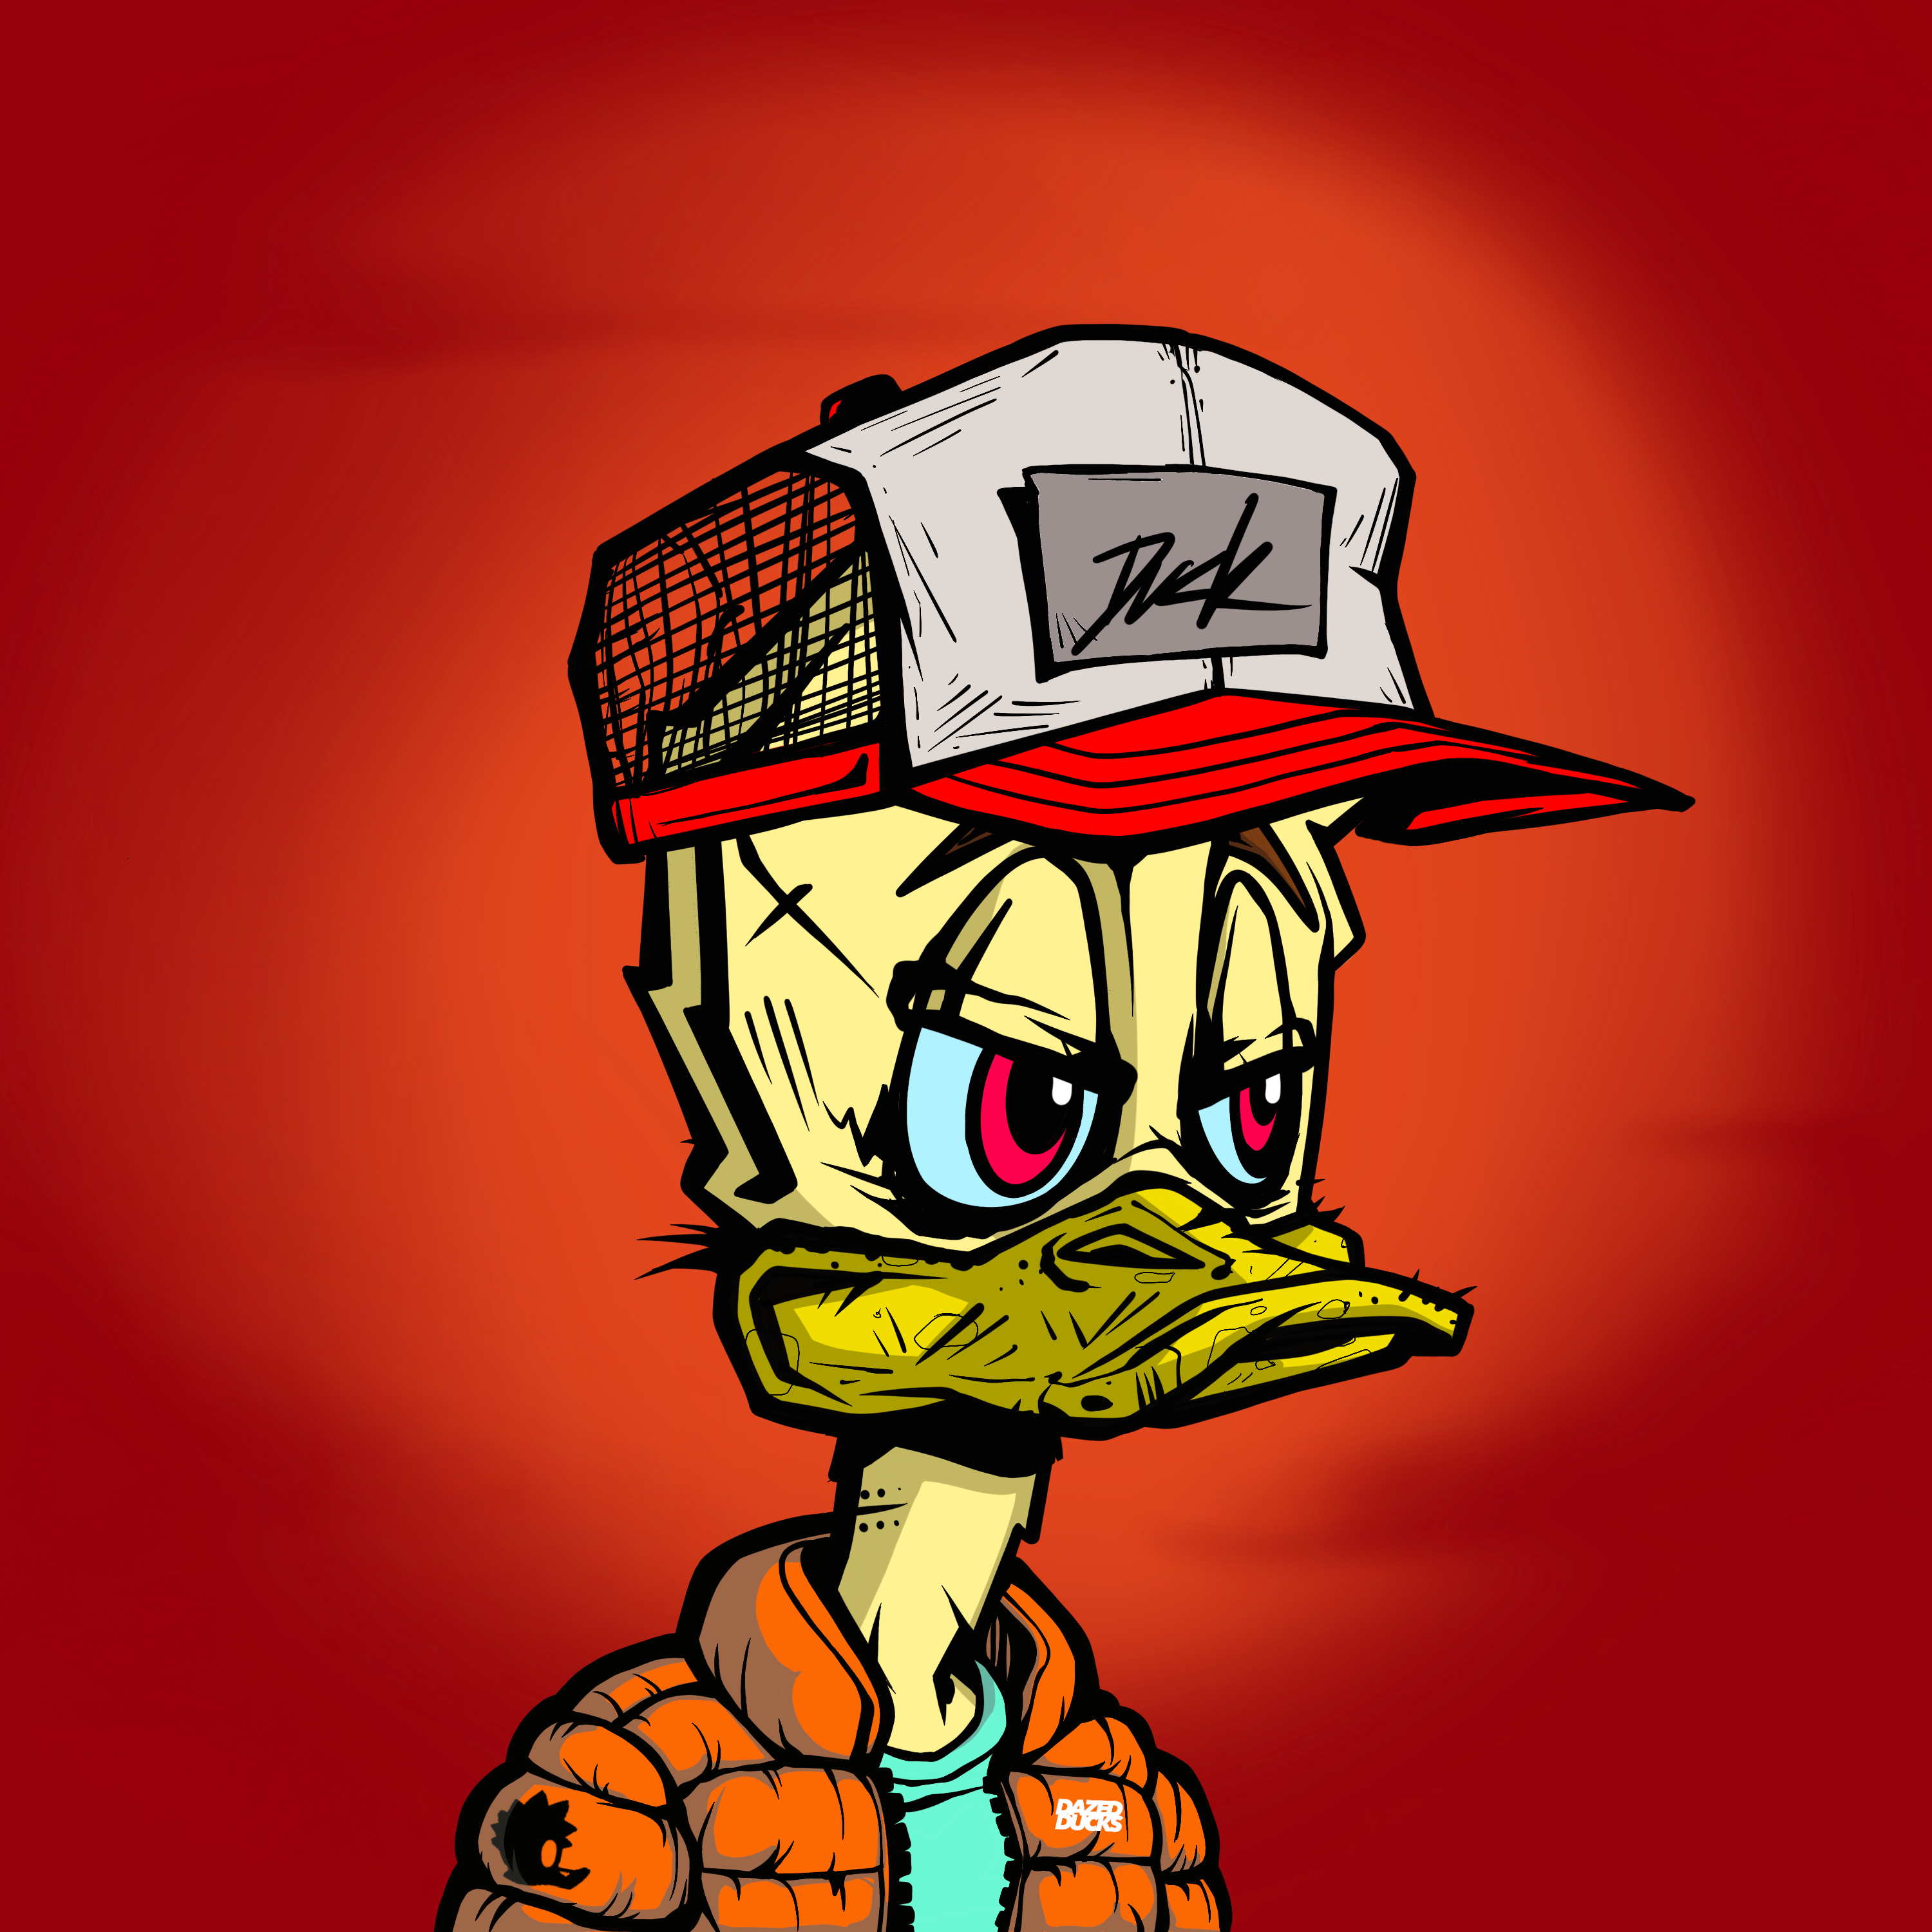 Dazed Ducks #1008